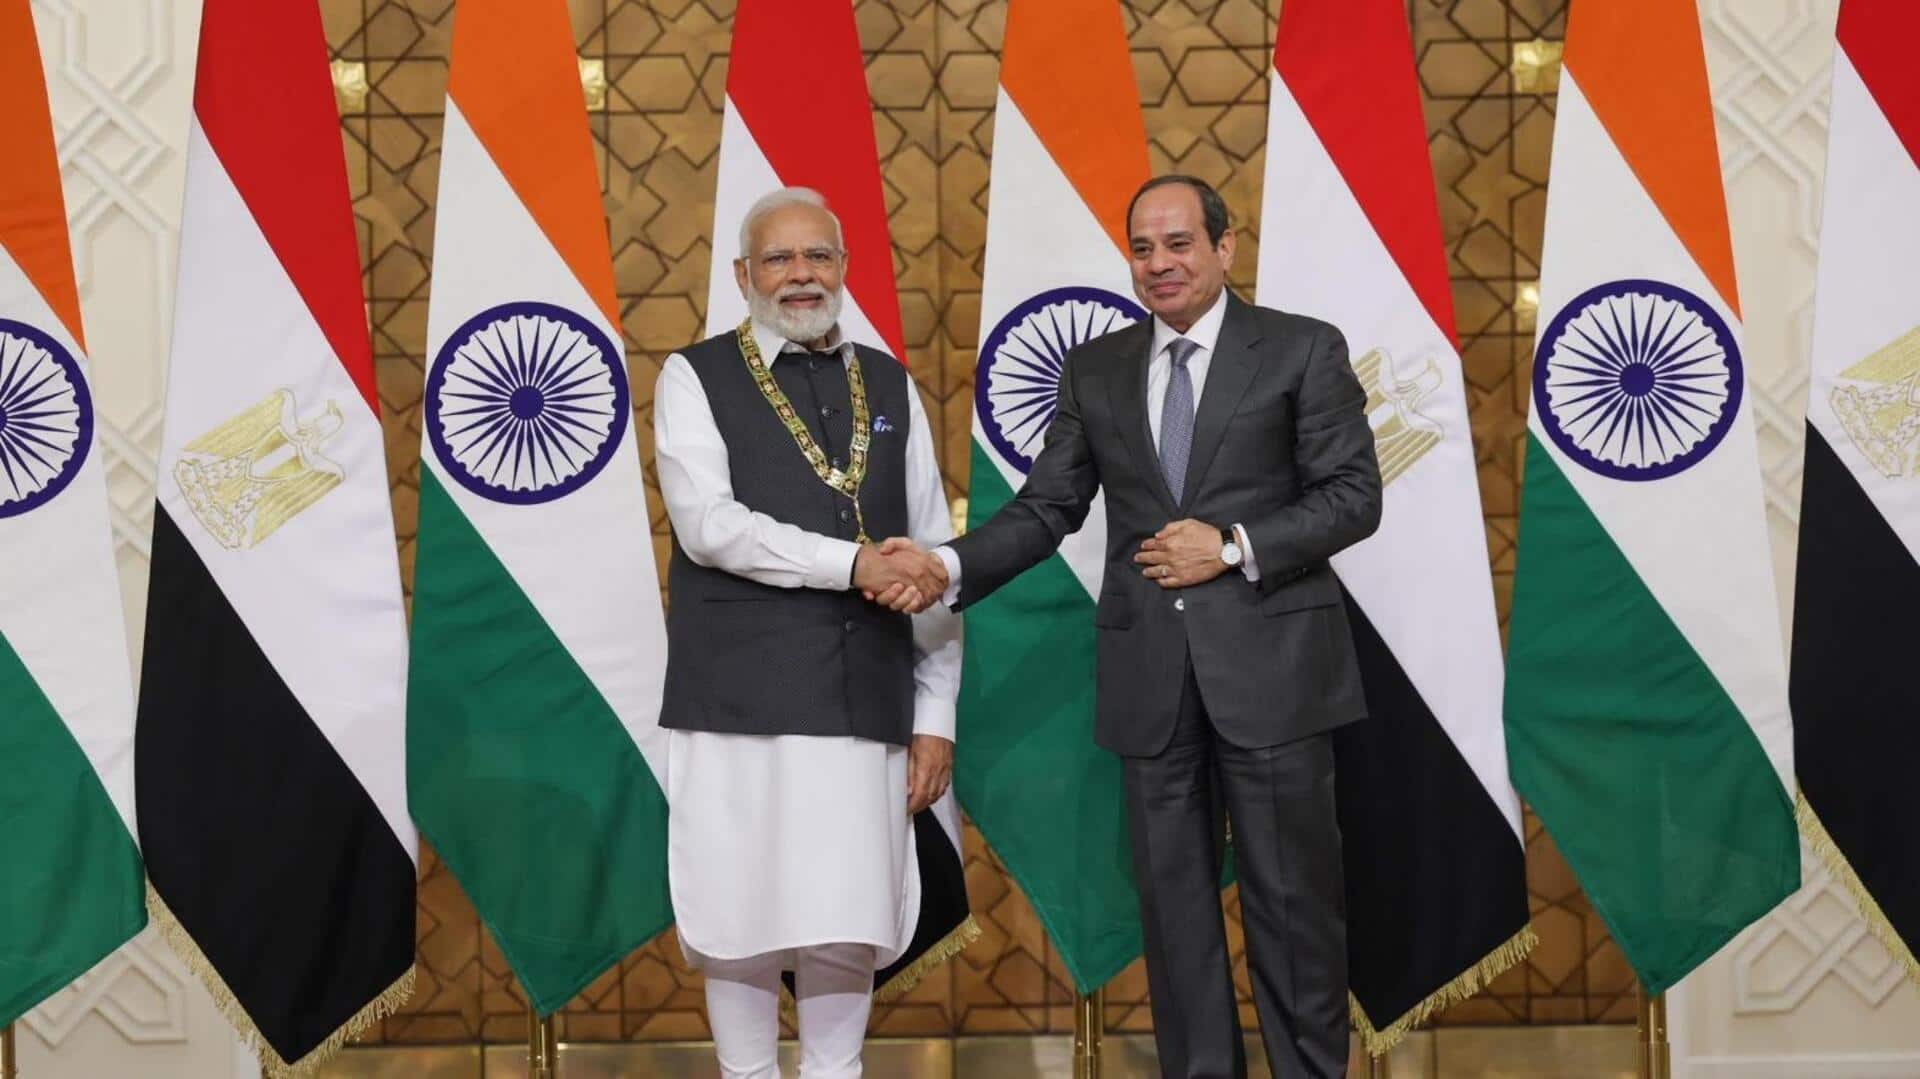 प्रधानमंत्री मोदी को मिला मिस्र का सर्वोच्च राजकीय सम्मान 'ऑर्डर ऑफ द नाइल'